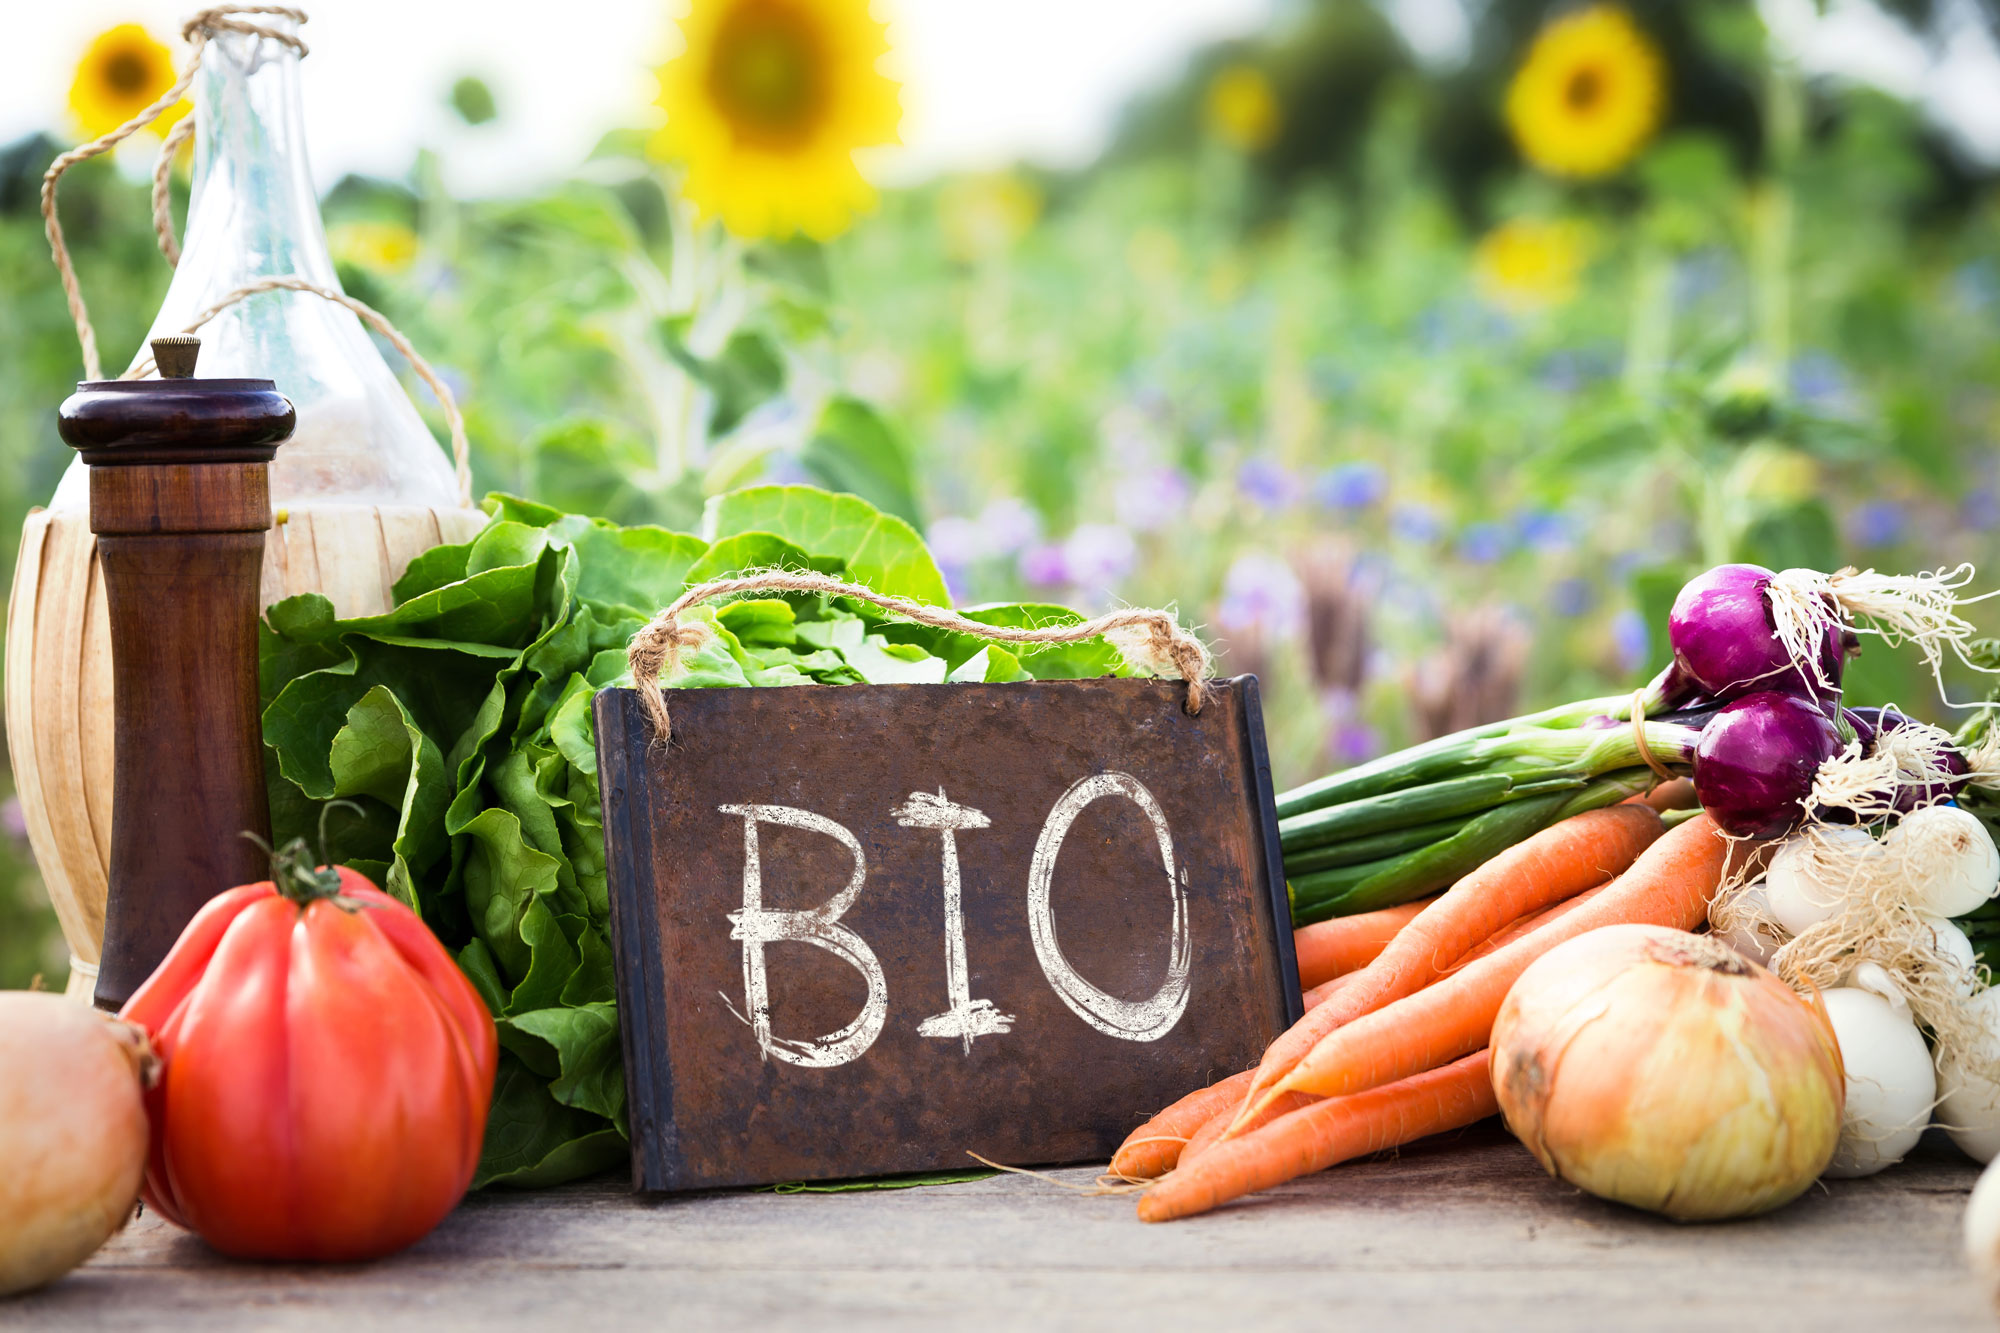 Les produits bio sont-ils plus sains que les autres?